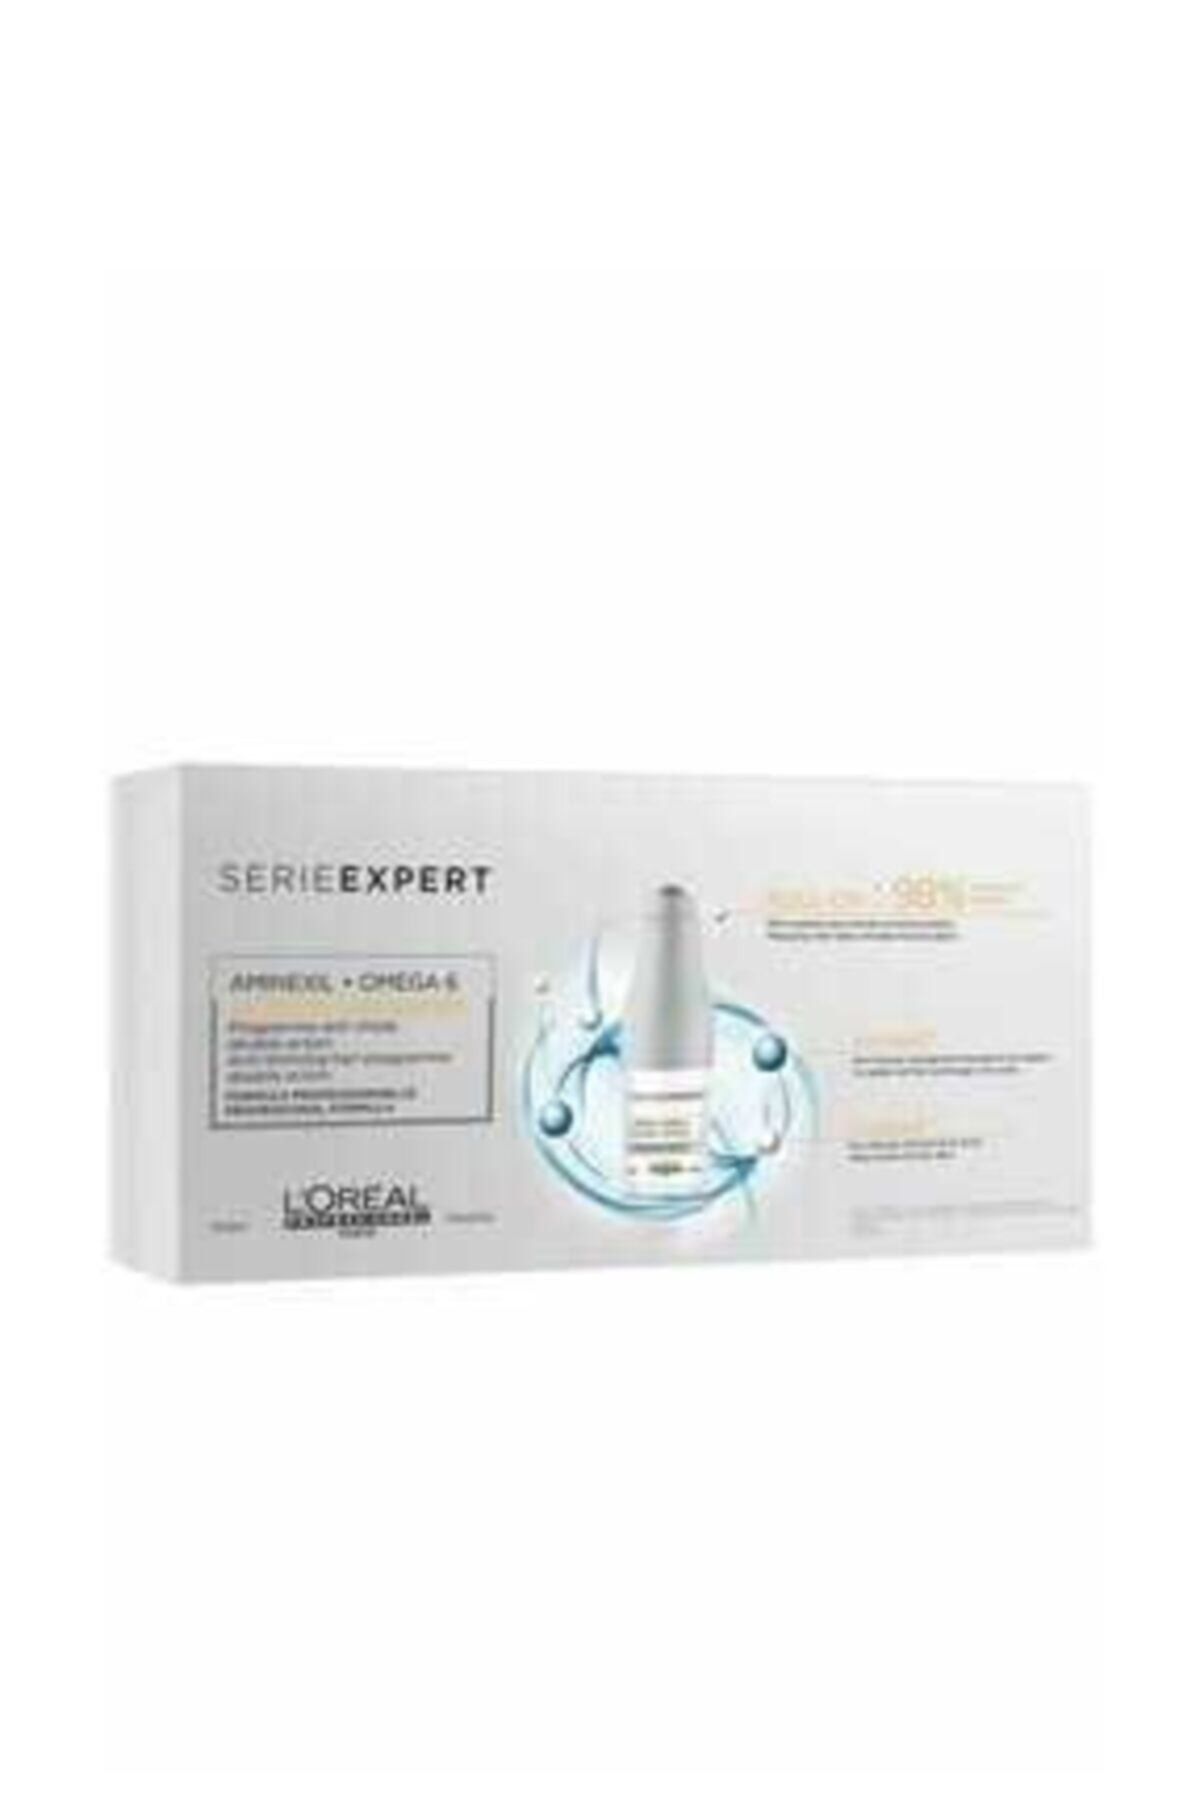 L'oreal Professionnel Serie Expert Aminexil Advanced Saç Dökülmesine Karşı Etkili Serum 10x6ml